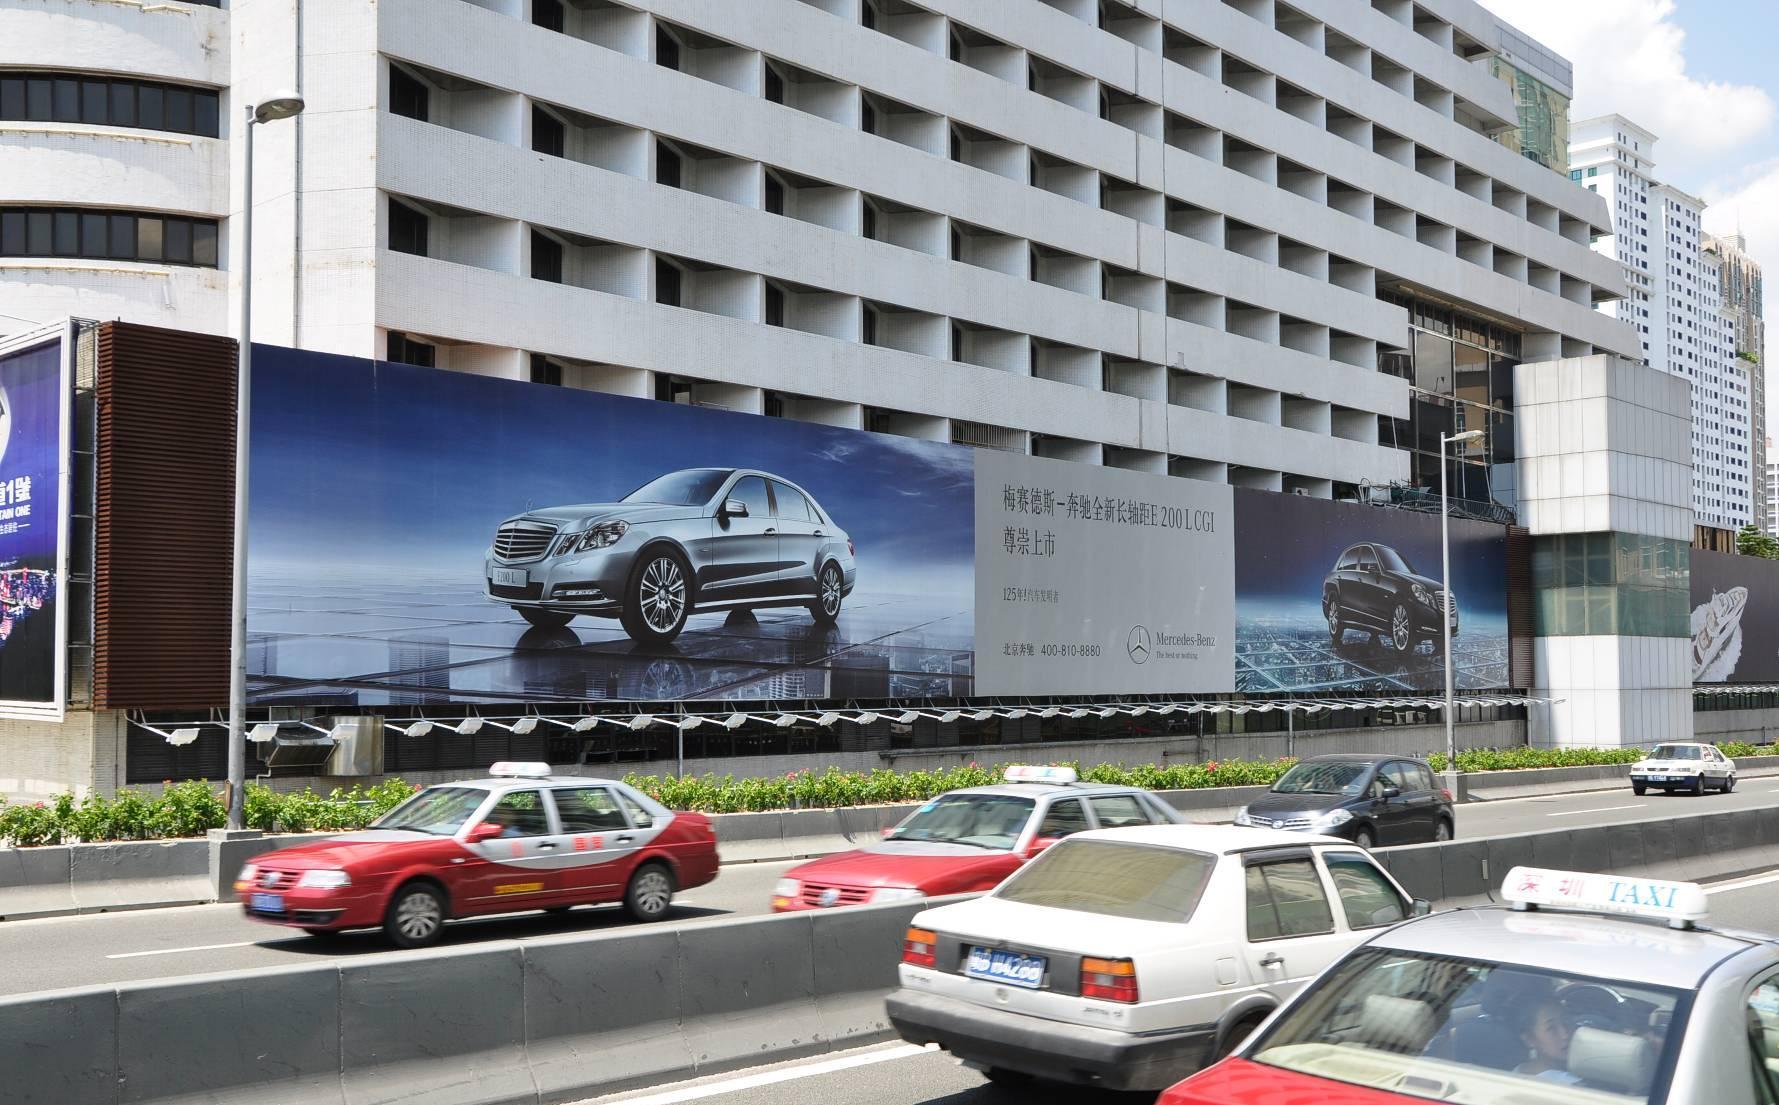 新都酒店外墙的奔驰车广告是易简做的吗?